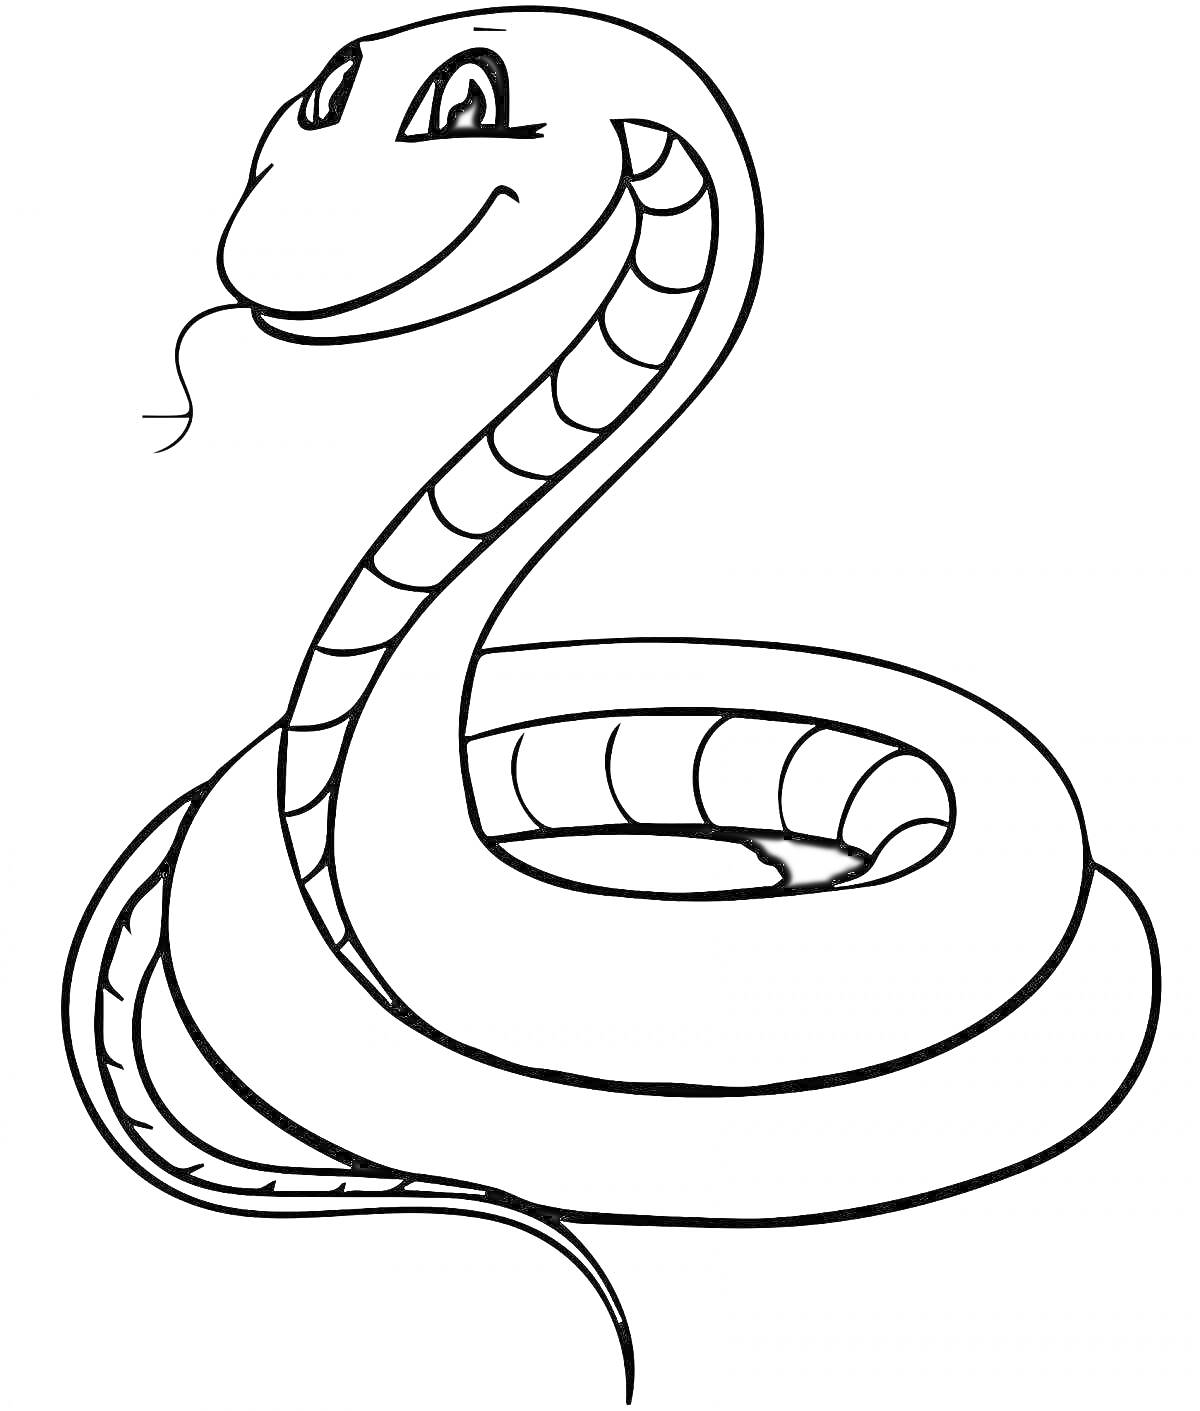 Раскраска улыбающаяся змея с языком, свернувшаяся в кольцо